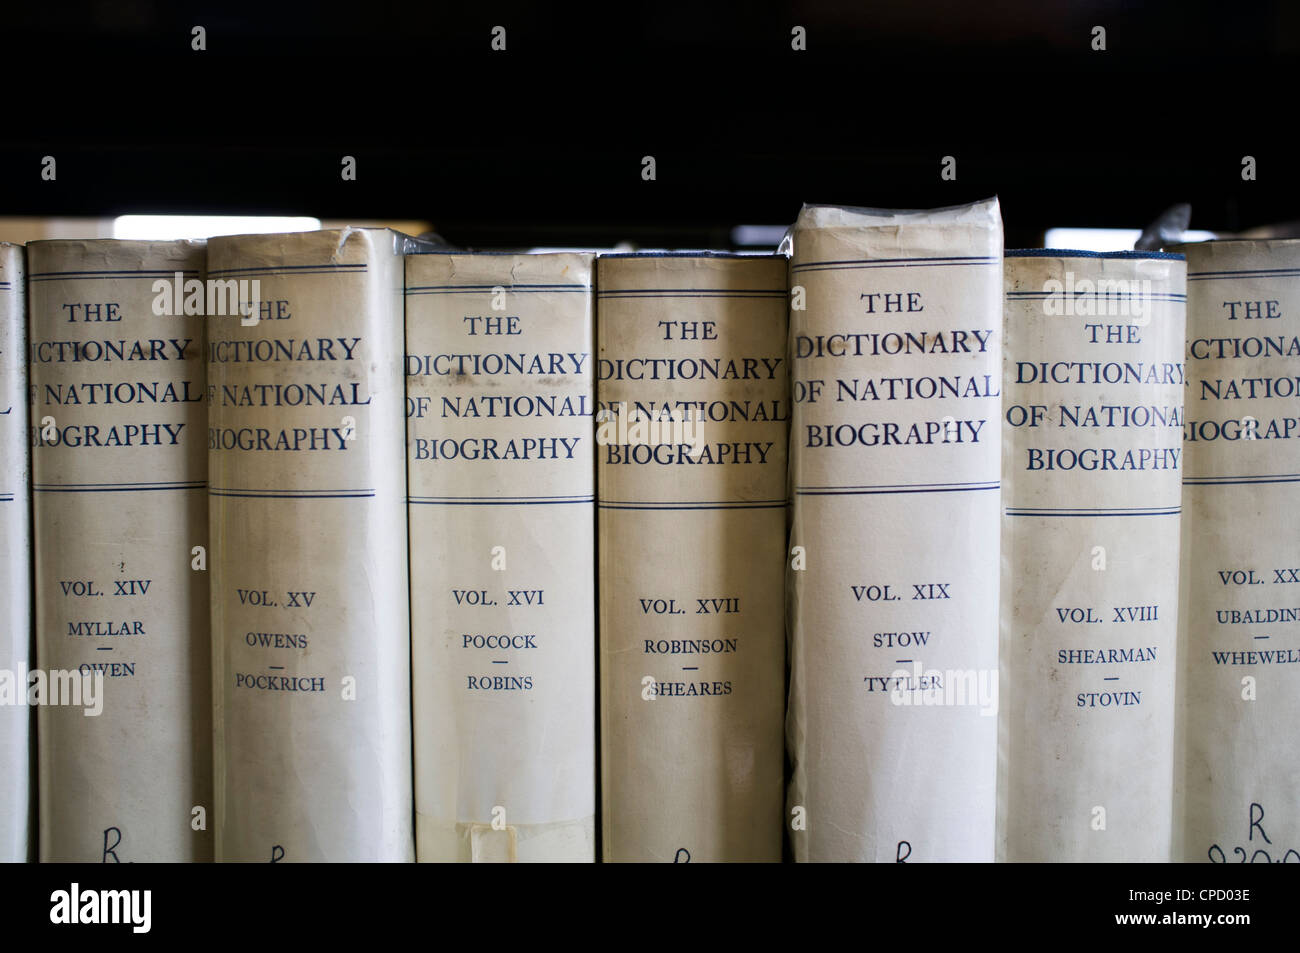 Kopien des Dictionary of National Biography Bücher im Abschnitt "Reference" eine öffentliche Bibliothek, UK Stockfoto